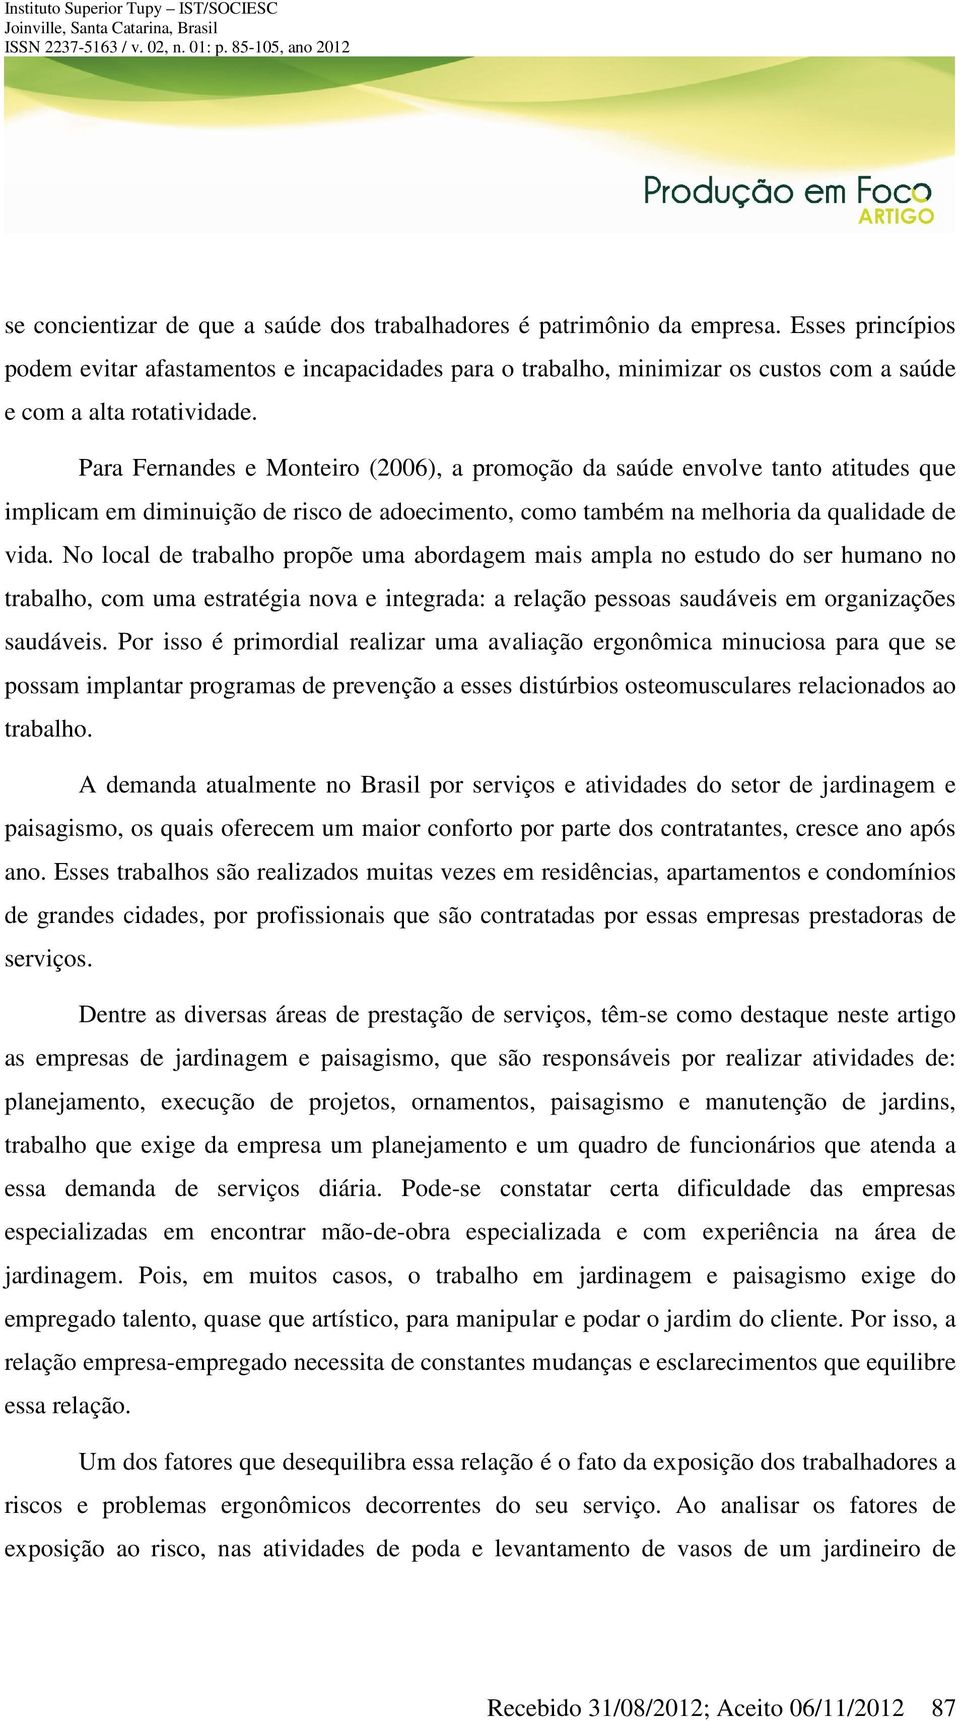 Para Fernandes e Monteiro (2006), a promoção da saúde envolve tanto atitudes que implicam em diminuição de risco de adoecimento, como também na melhoria da qualidade de vida.